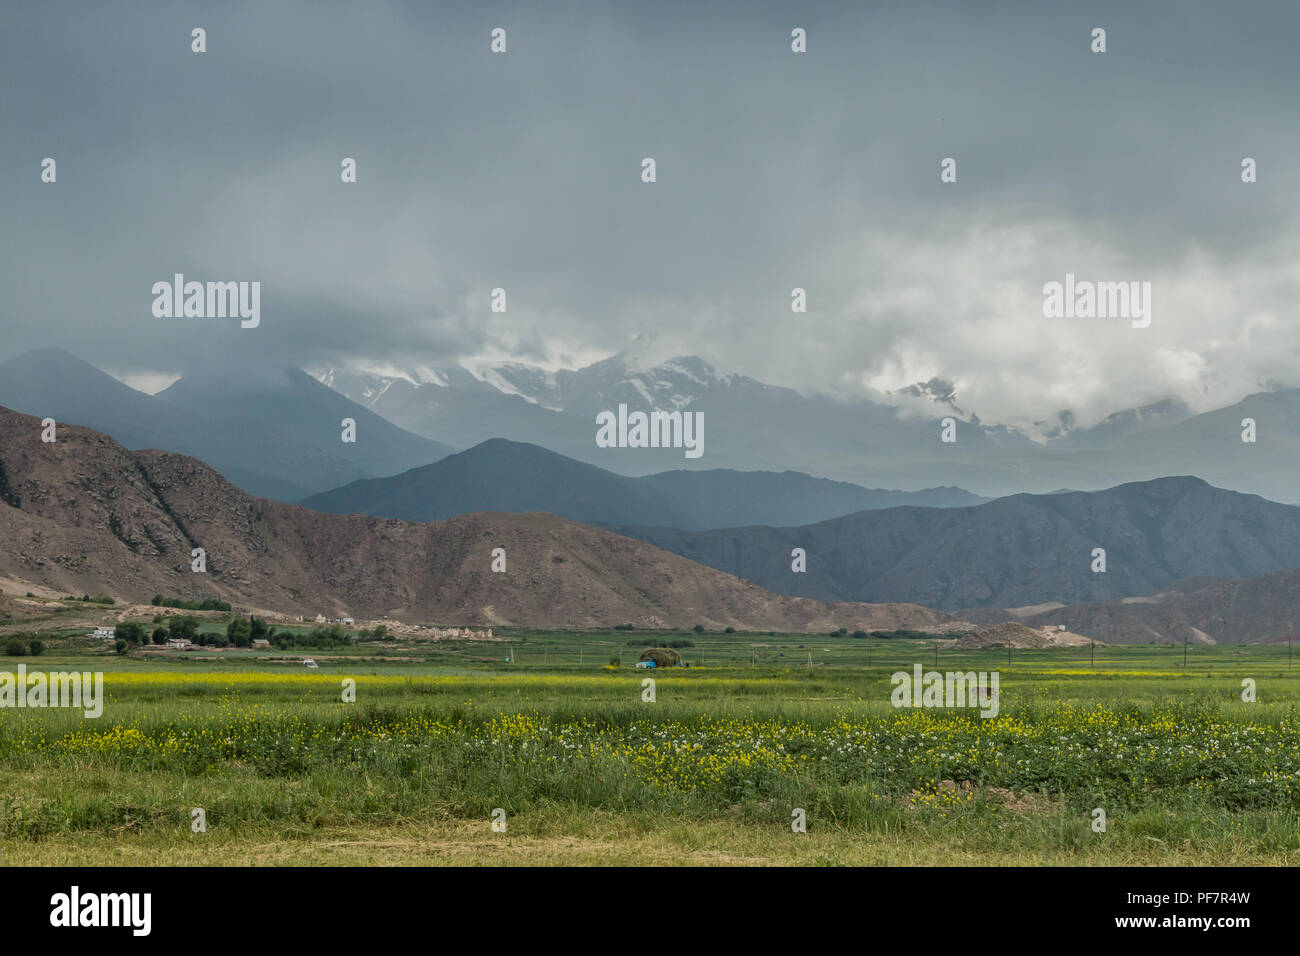 Landwirtschaftliche Flächen mit Bergen im Hintergrund, in Bokonbayevo am Ufer des Issyk-Kul-See, Kirgisistan. Stockfoto